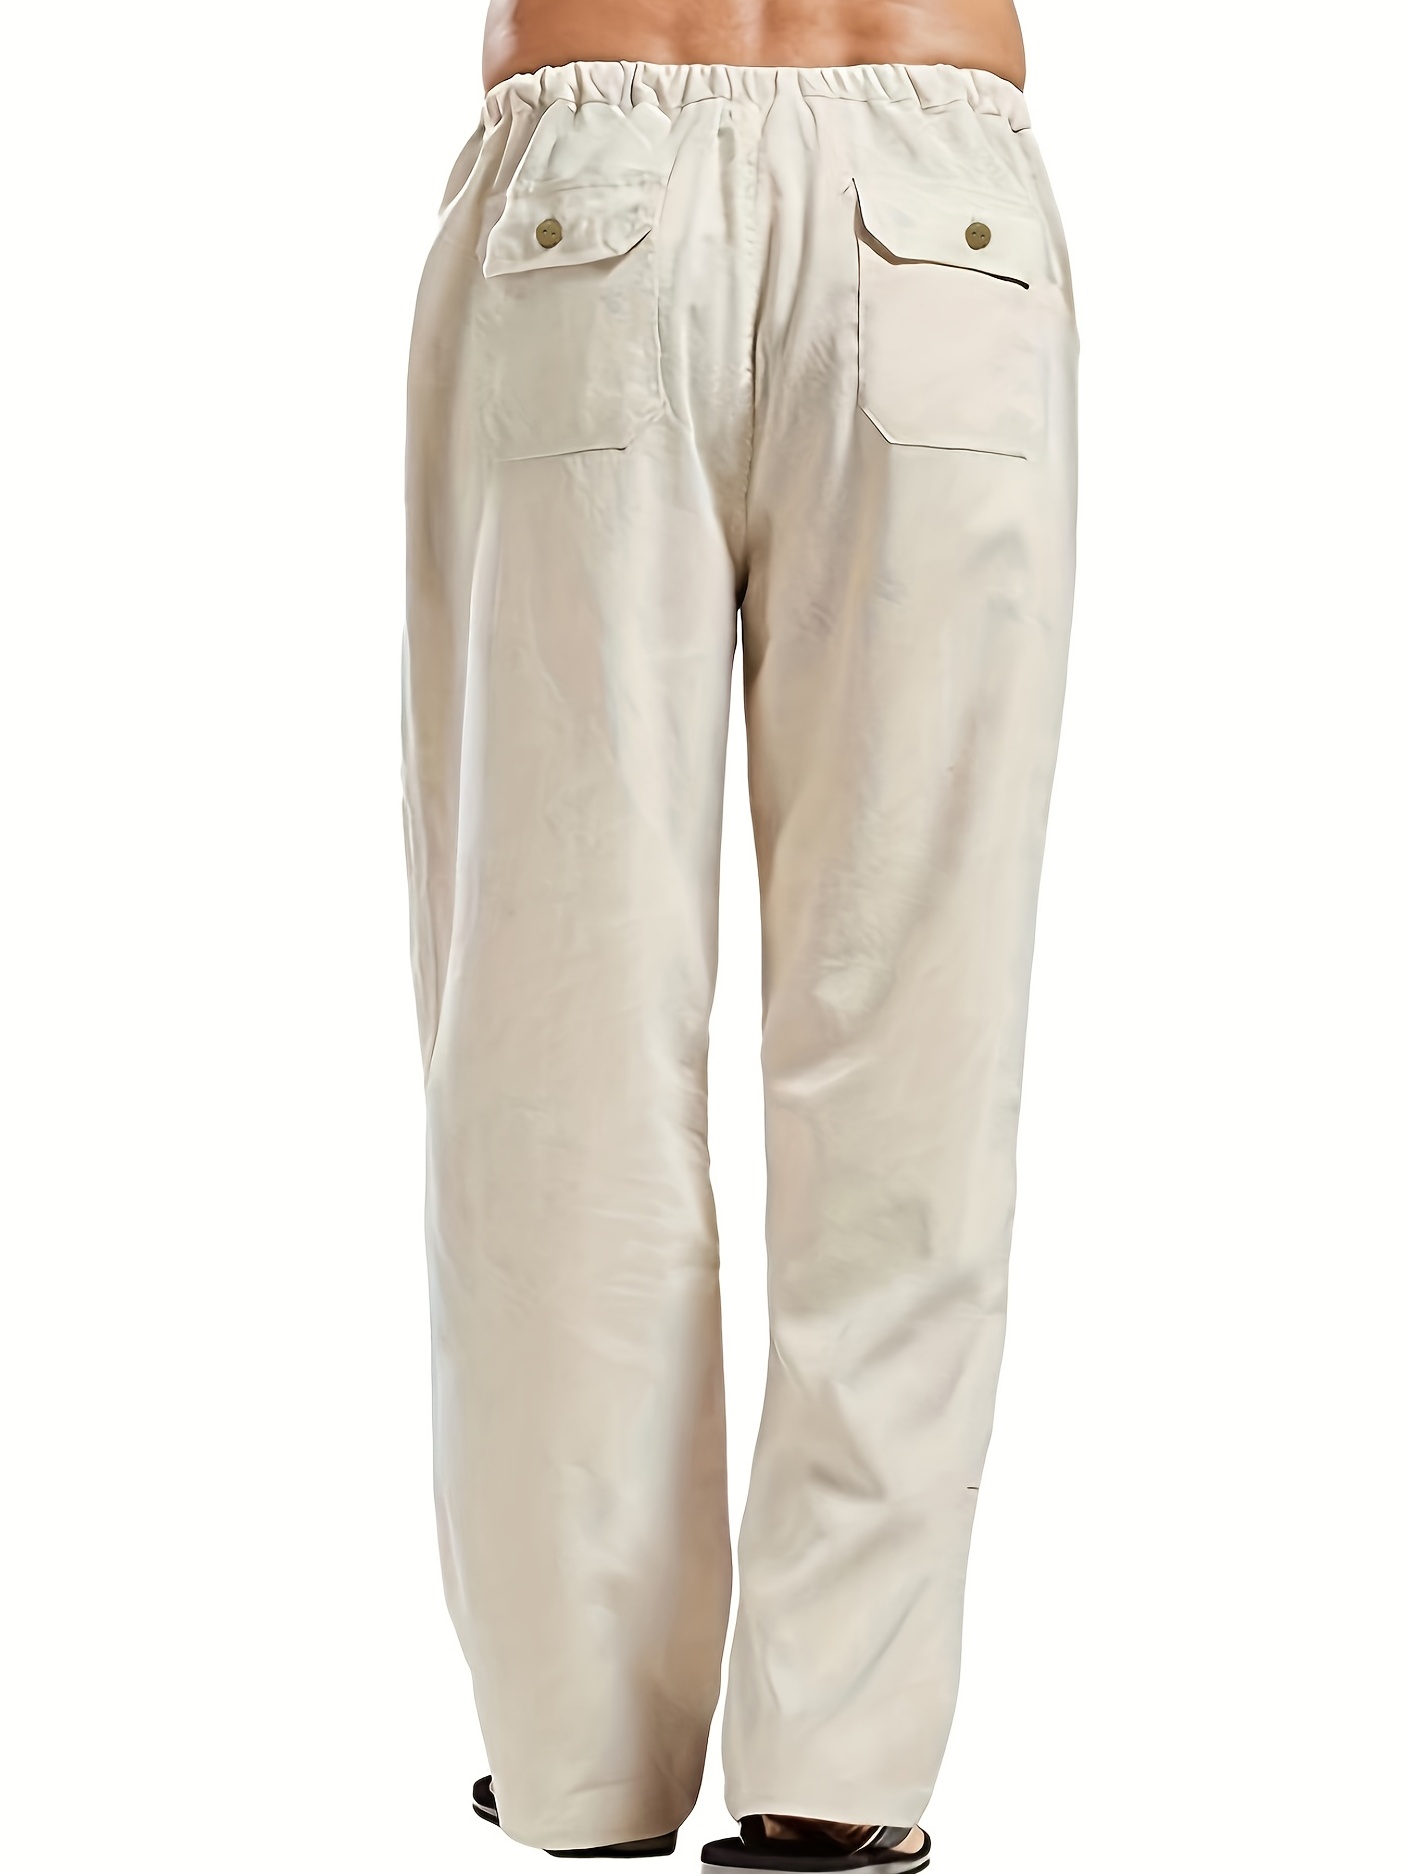 mens cotton linen blend long pants loose elastic waist large pocket trousers